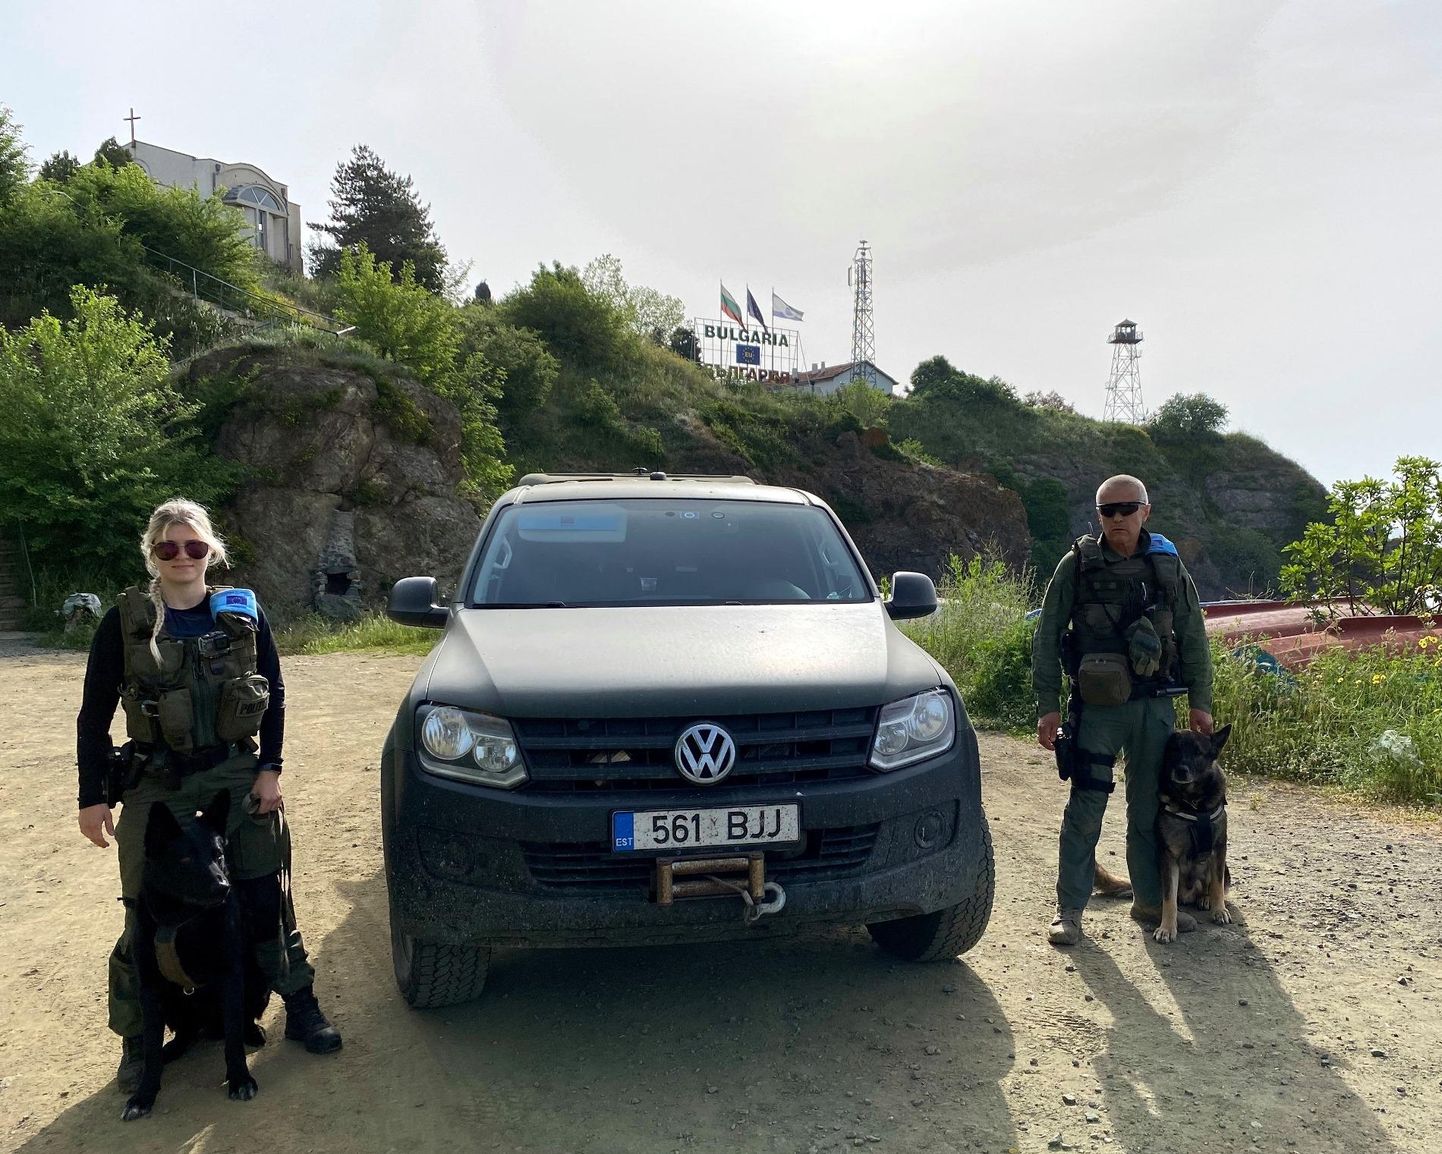 Saatse kordoni piirivalvur Janett ja tema koer Mac ning Vasknarva kordoni koerajuht Viidas ja teenistuskoer Blokki